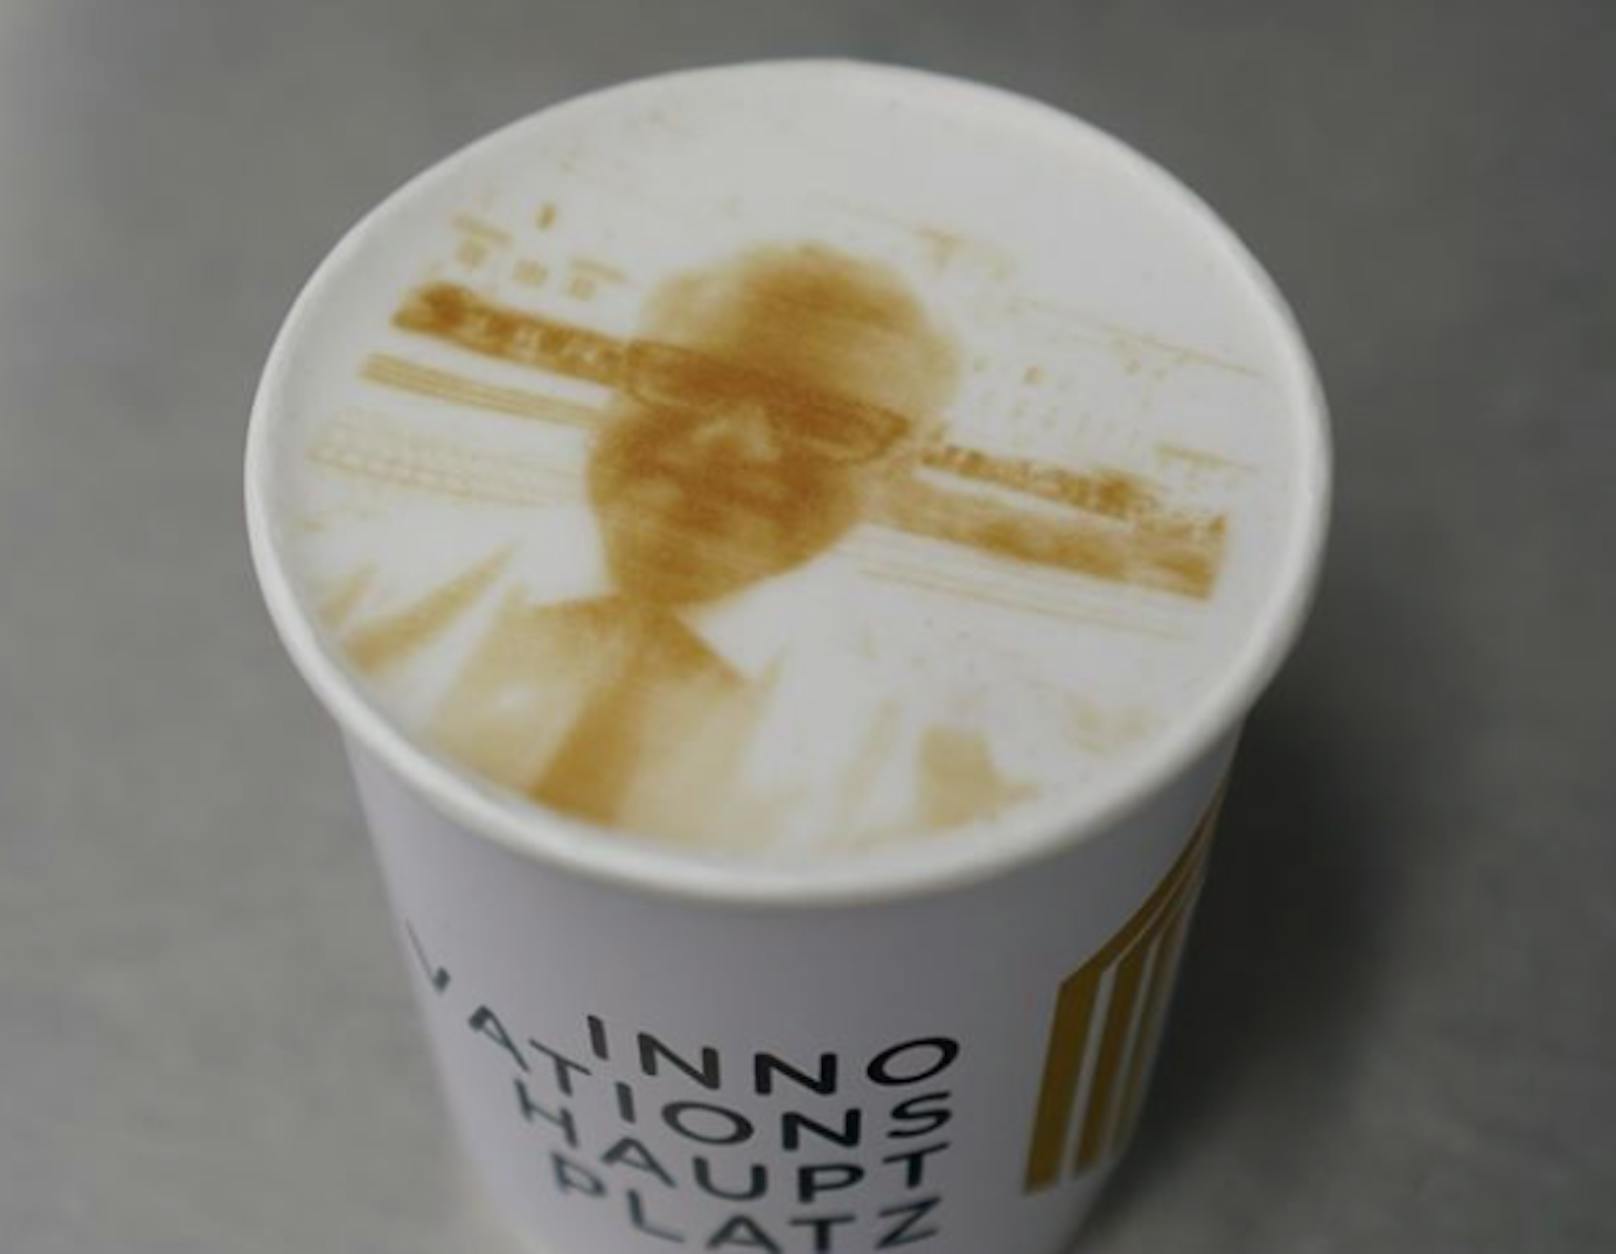 Bürgermeister Klaus Lugers Porträt ist auf diesem Kaffee zu sehen.